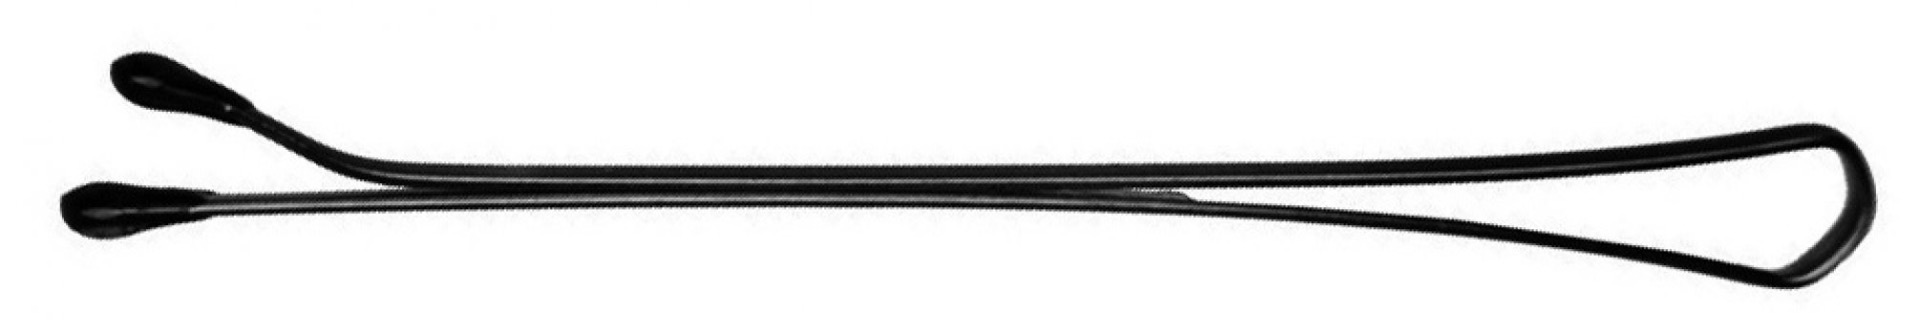 Невидимки 50 мм прямые, черные (200 гр.) DEWAL SLN50P-1/200